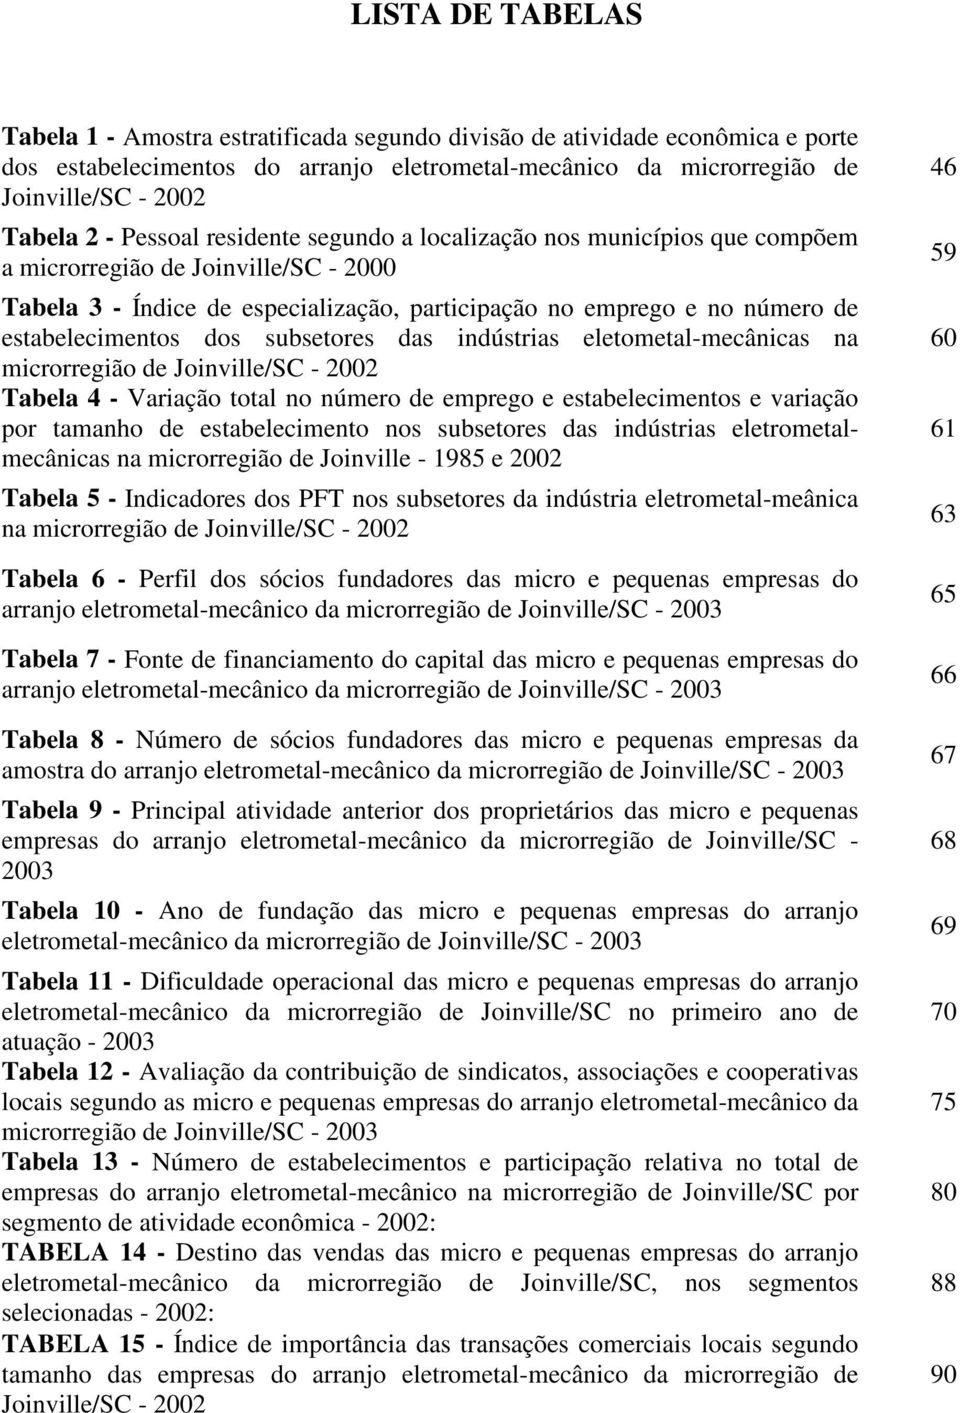 dos subsetores das indústrias eletometal-mecânicas na microrregião de Joinville/SC - 2002 Tabela 4 - Variação total no número de emprego e estabelecimentos e variação por tamanho de estabelecimento